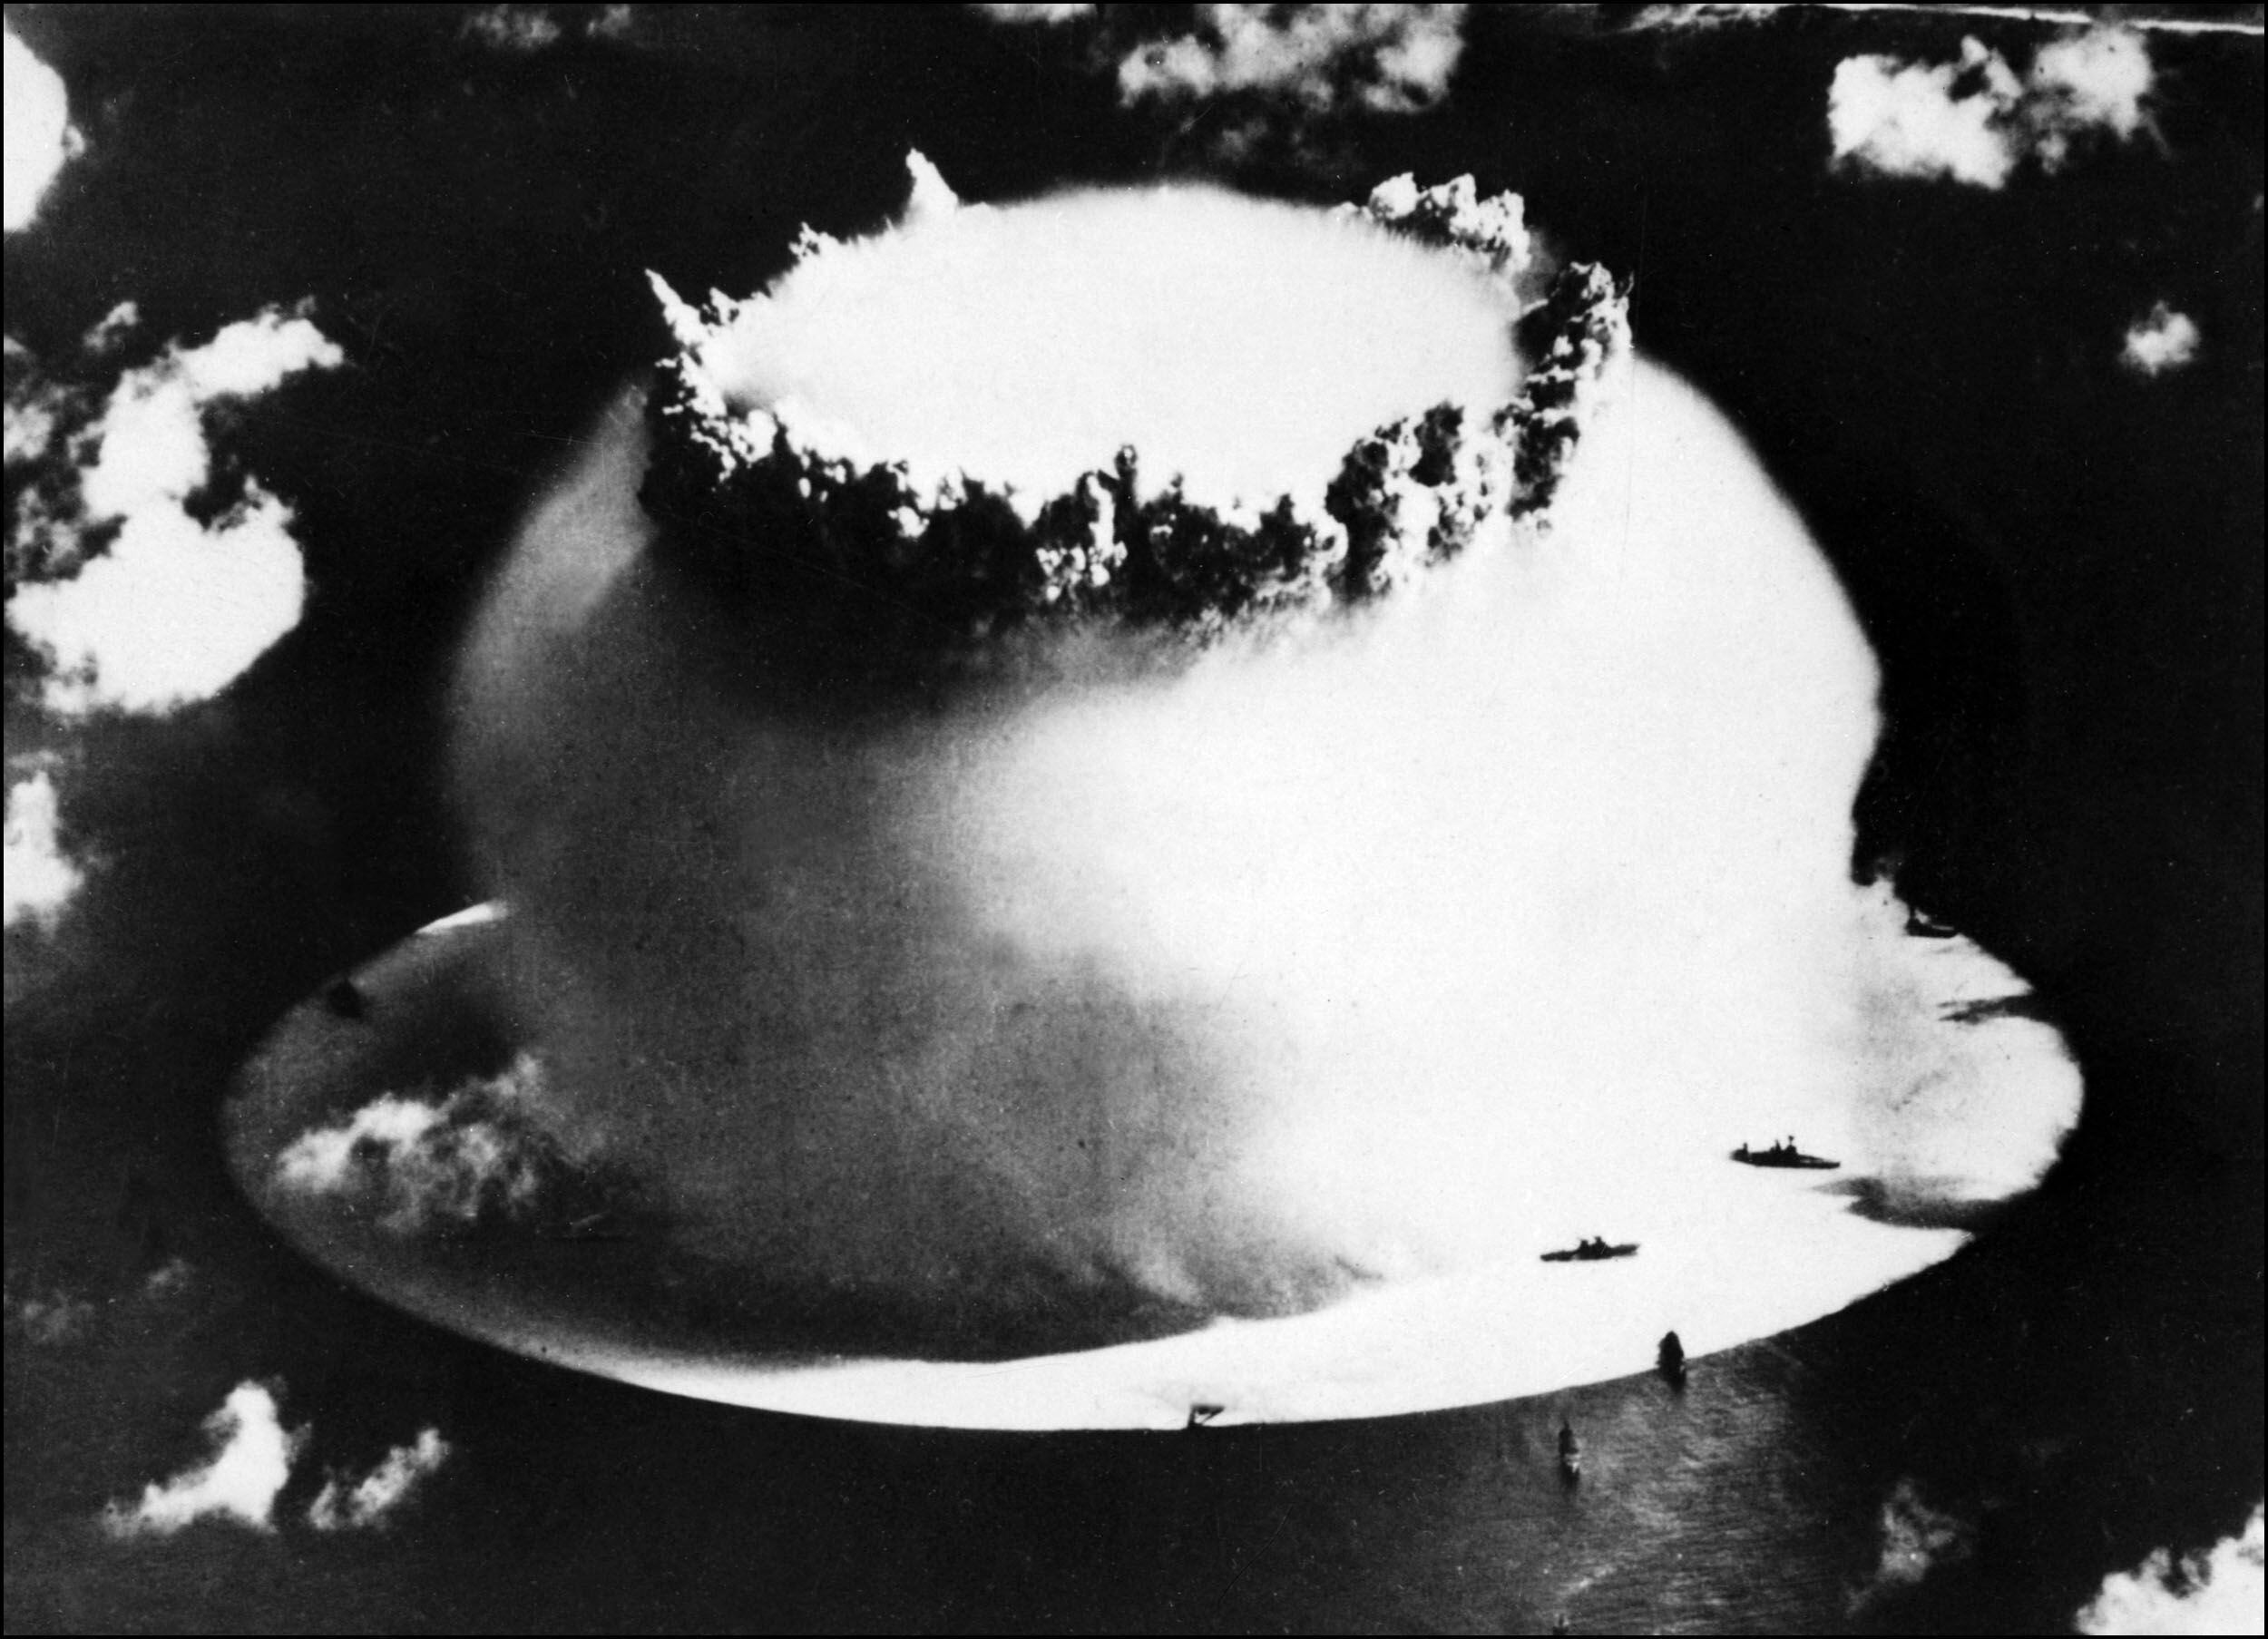 Foto fechada en julio de 1946 muestra la explosión de una bomba atómica durante los ensayos nucleares en el atolón de Bikini. (AFP).